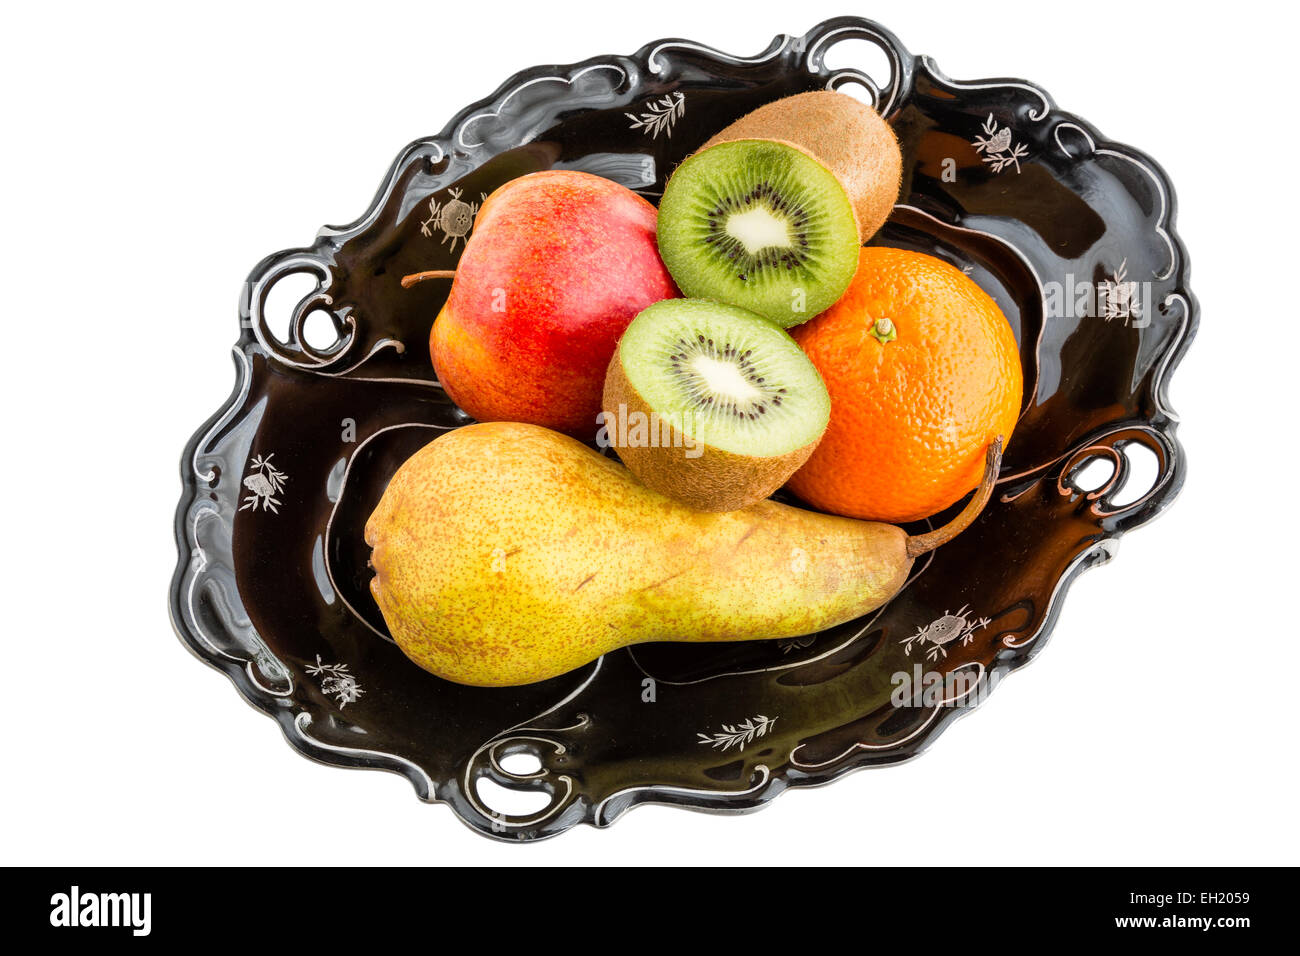 Fruits en vintage bowl - poire, pomme, kiwi, mandarine Banque D'Images